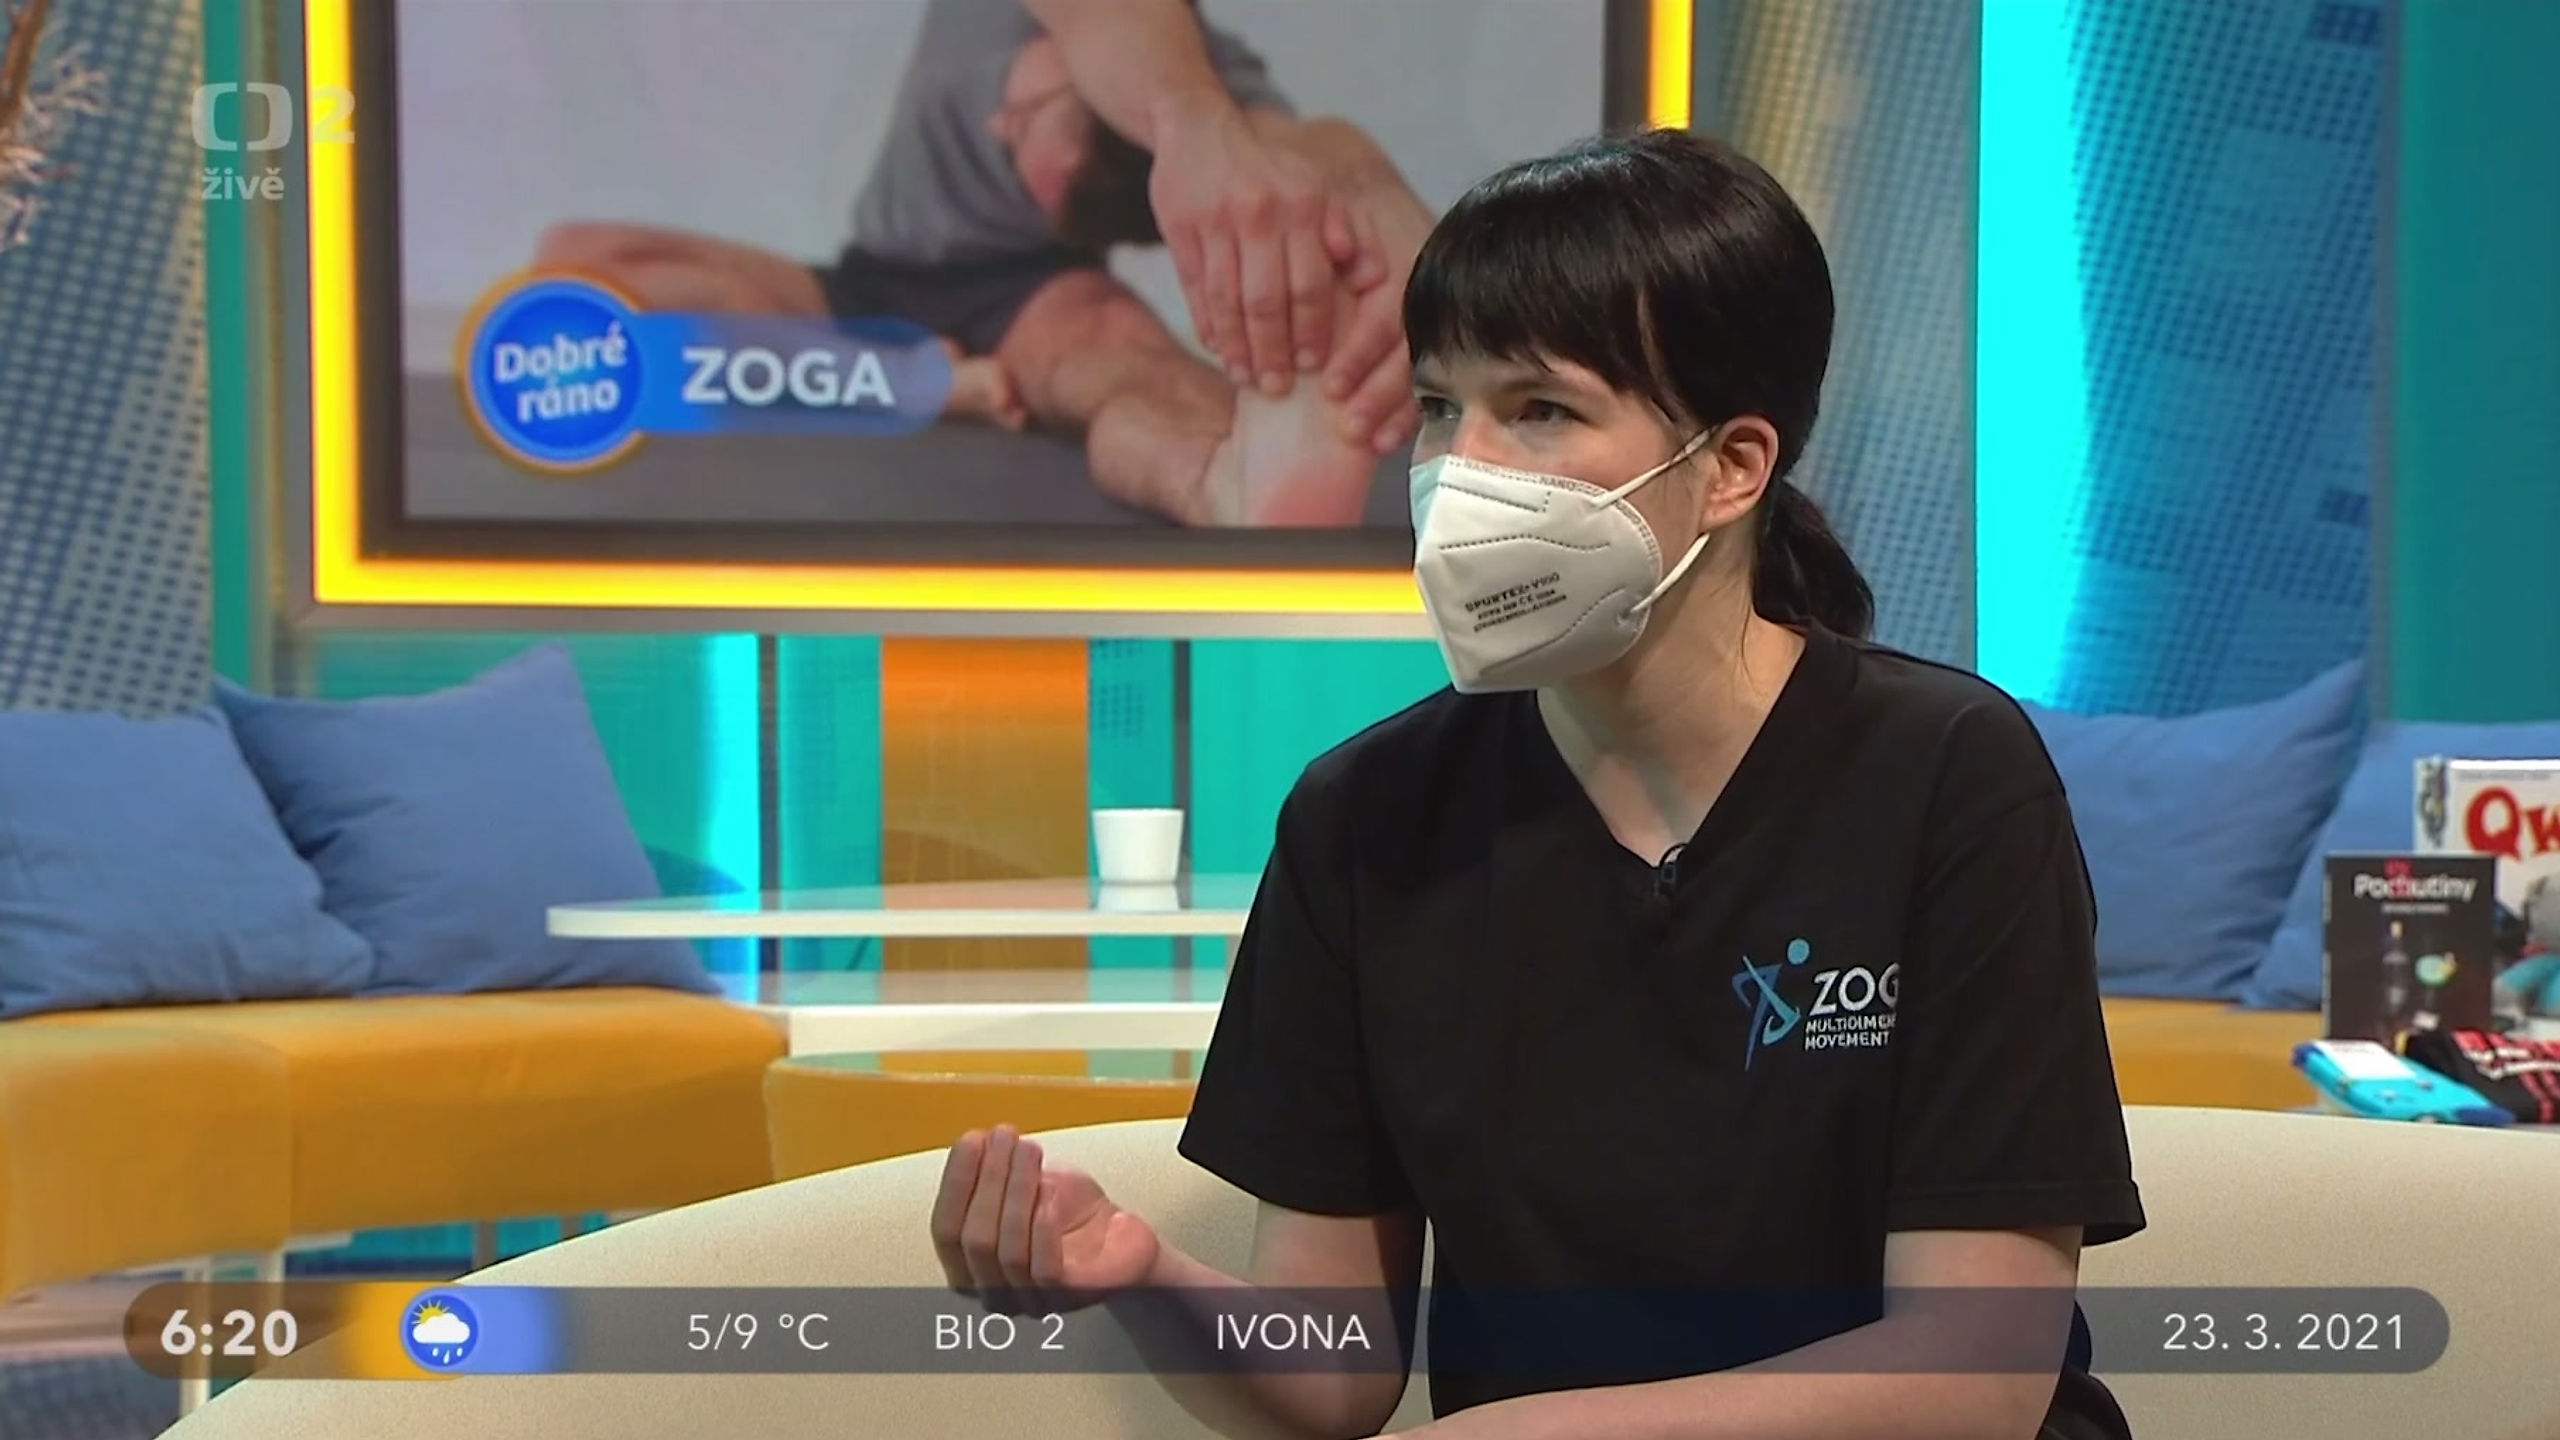 (urývek) Česká televize - Dobré ráno - Renata Dębicka ZOGA Movement